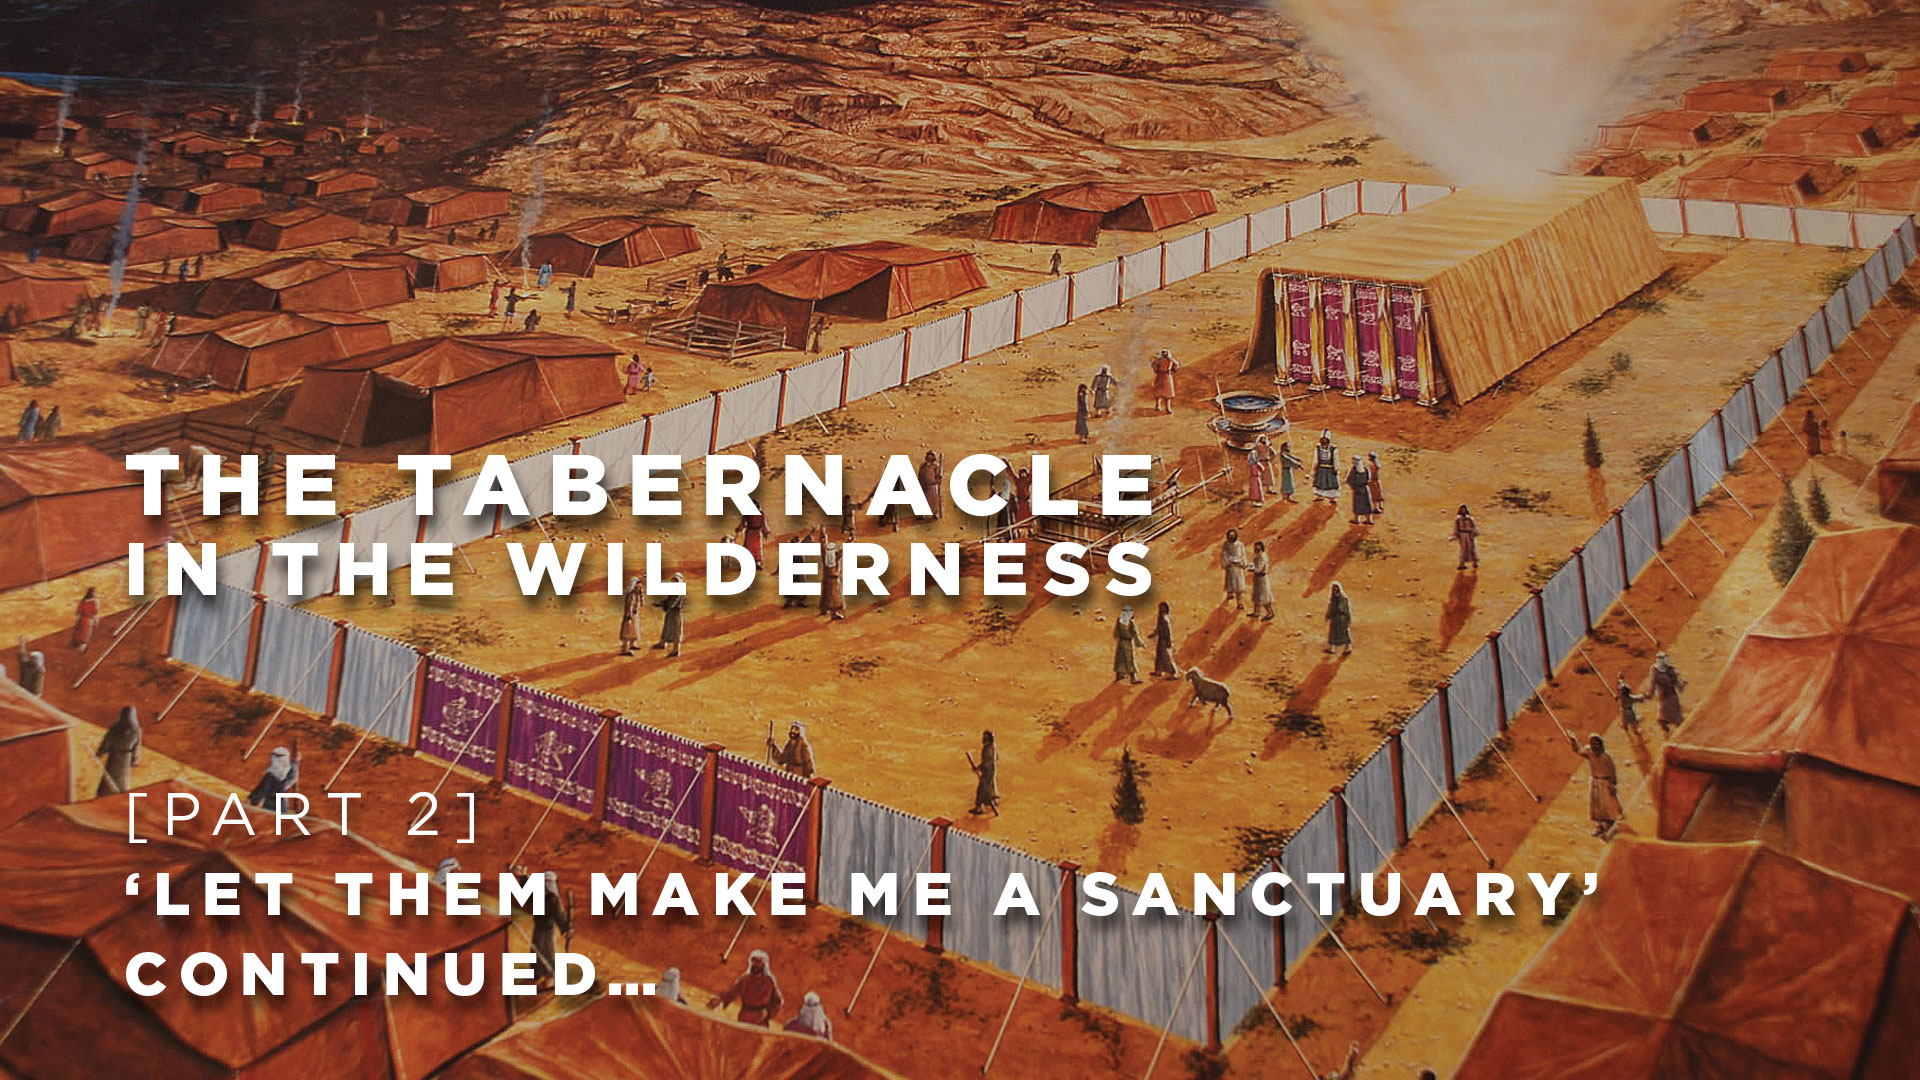 Part 2: Let them make me a sanctuary - continued